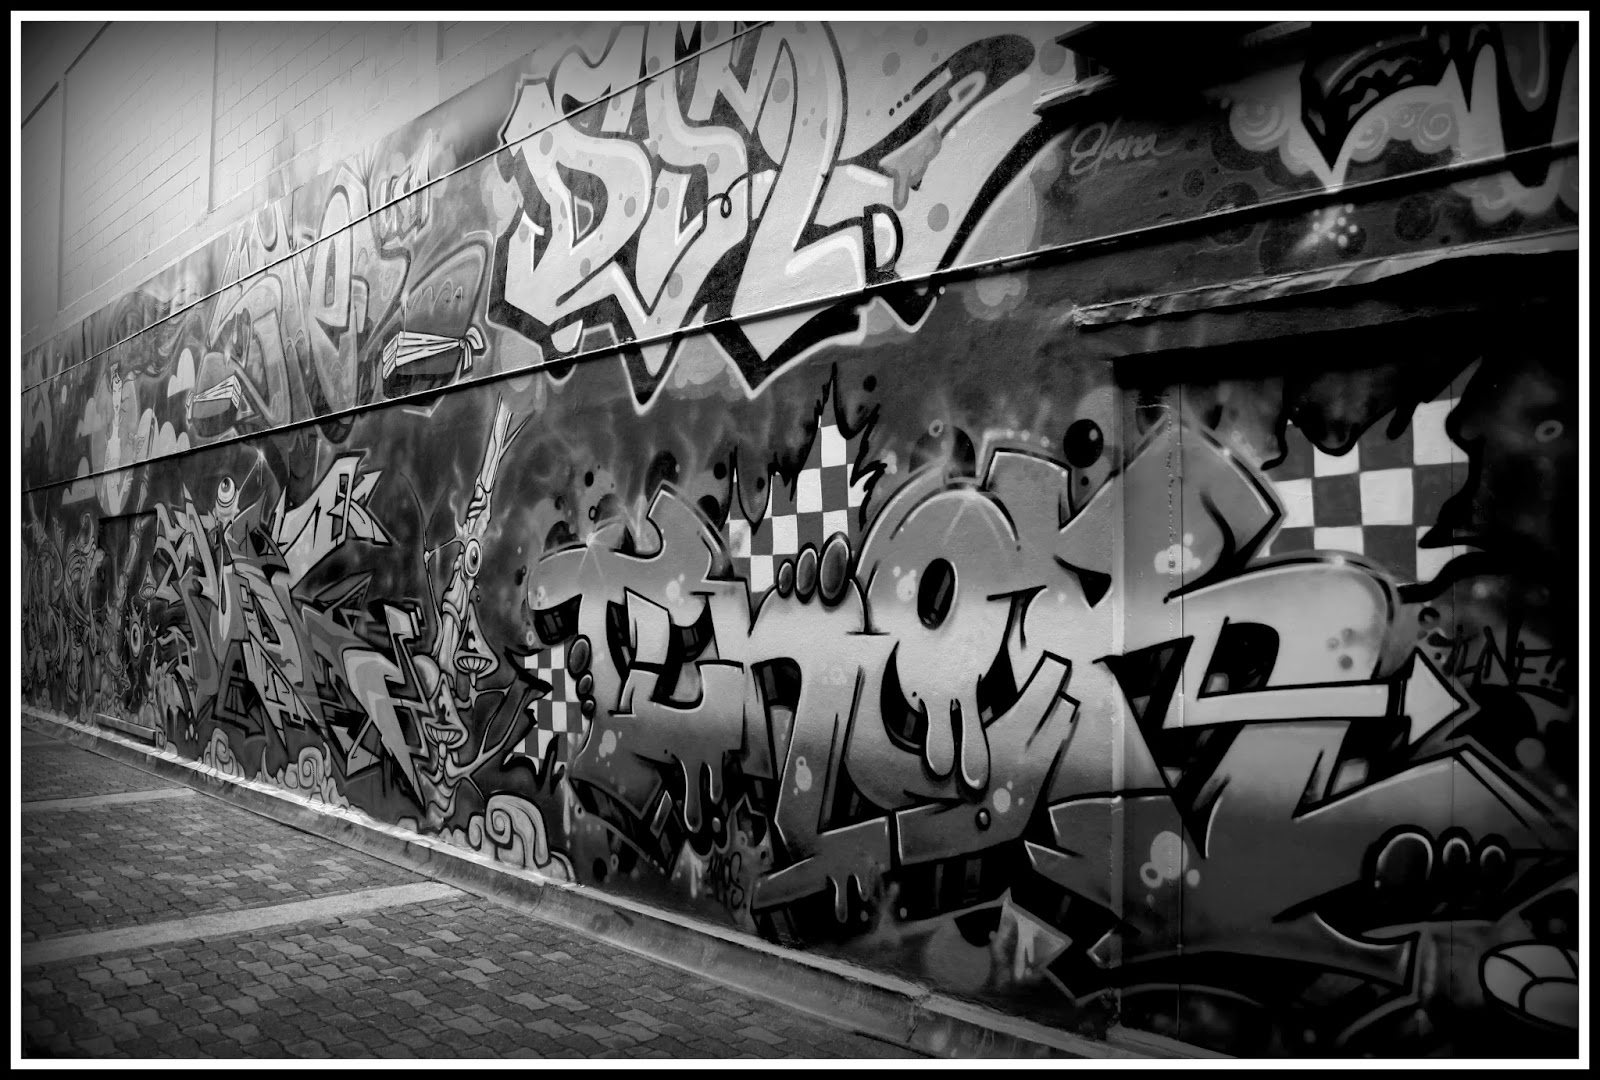 Graffiti Wall: Graffiti wallpaper black and white